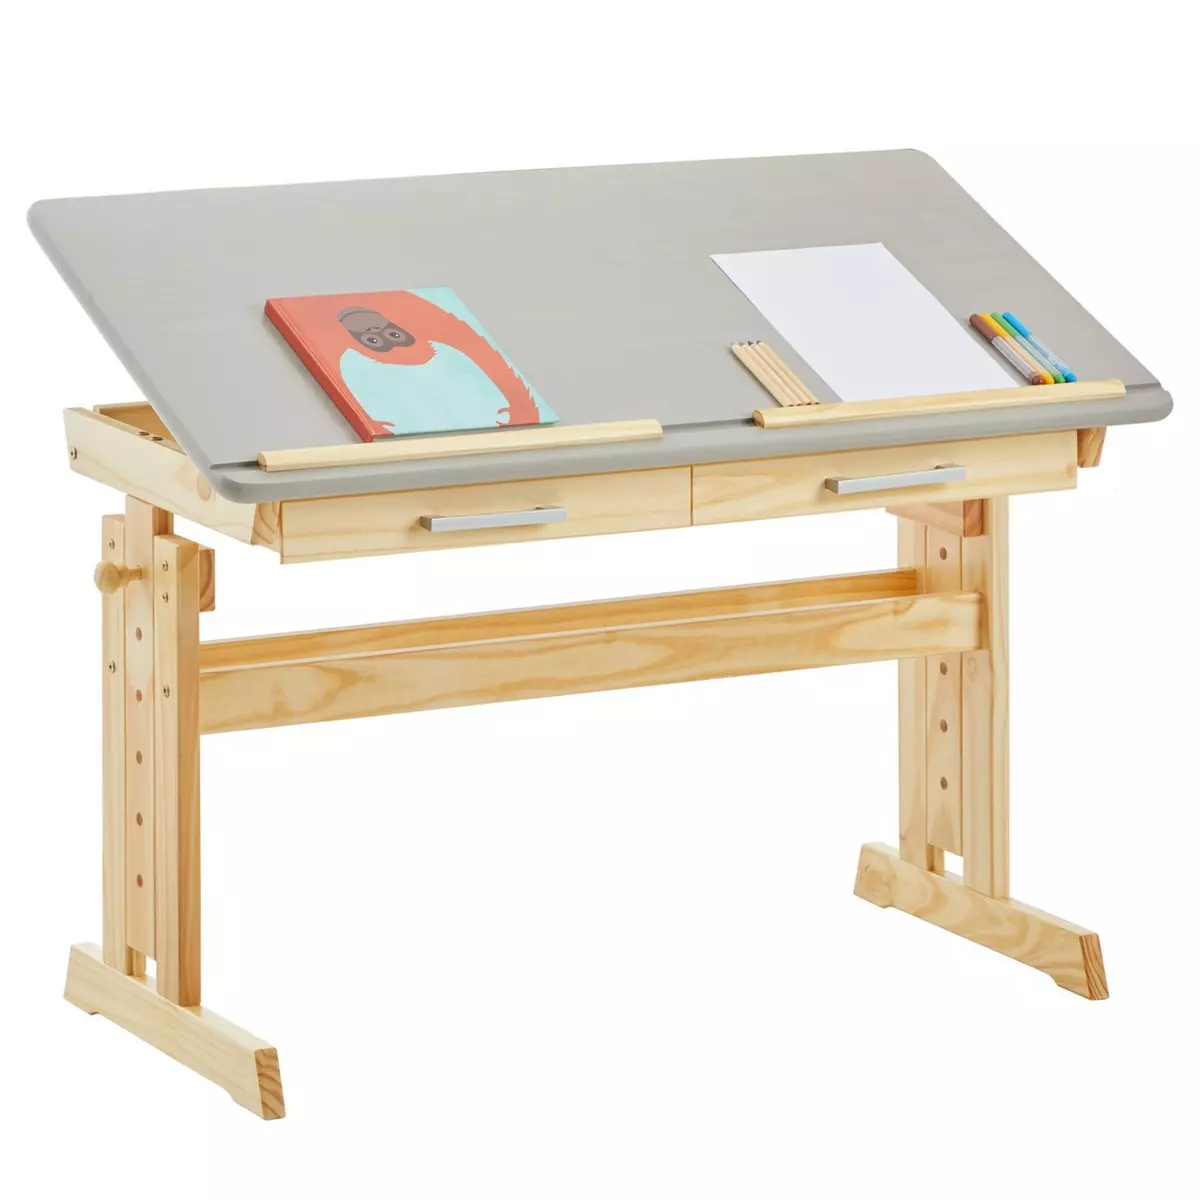 IDIMEX Bureau enfant écolier junior OLIVIA table à dessin réglable en hauteur et pupitre inclinable, 2 tiroirs en pin massif naturel/gris